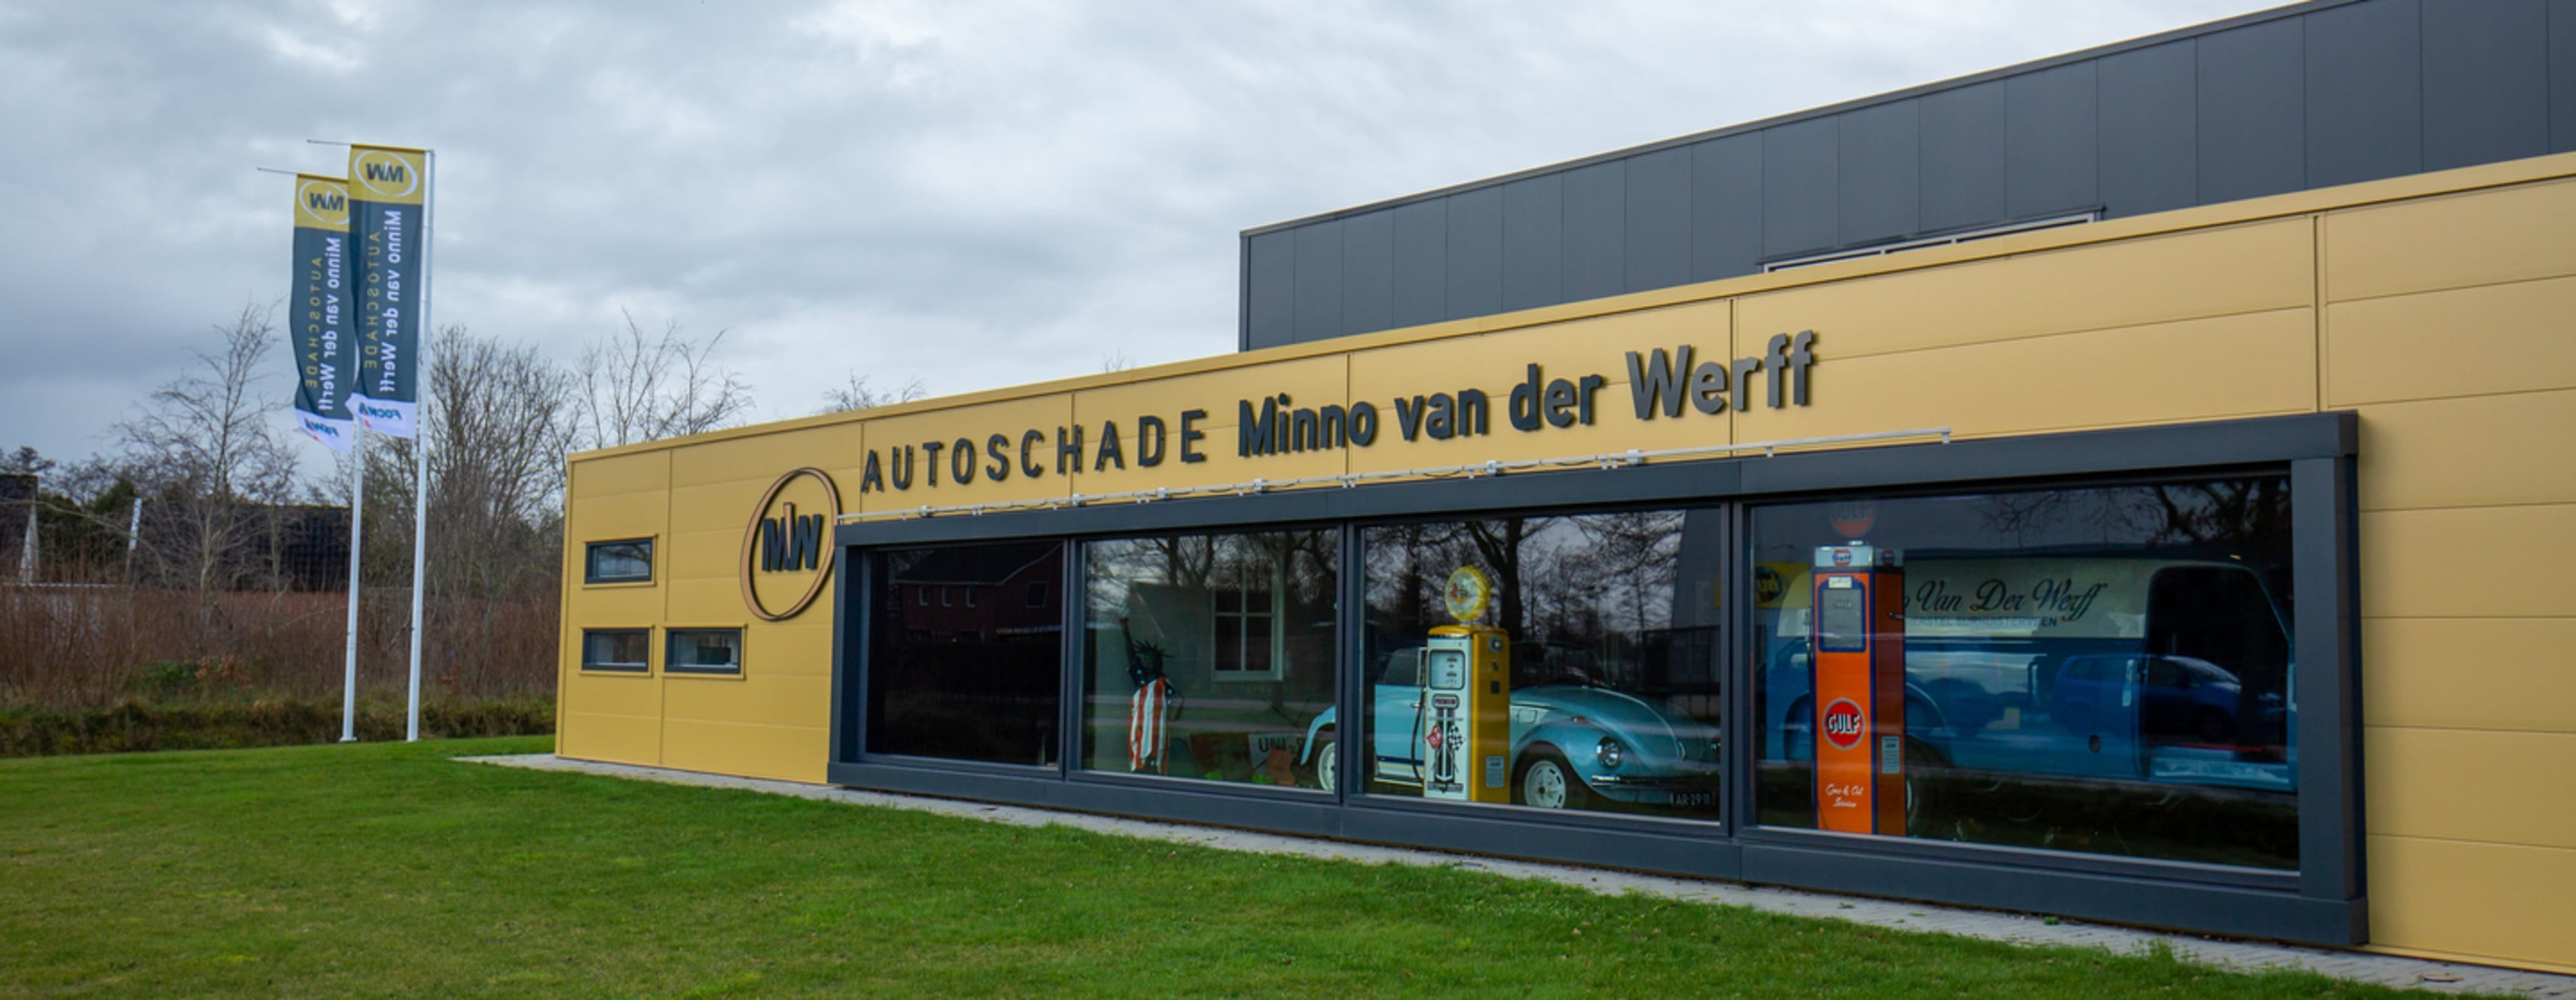 Nieuwe website en wasstraat voor Autoschade Minno van der Werff